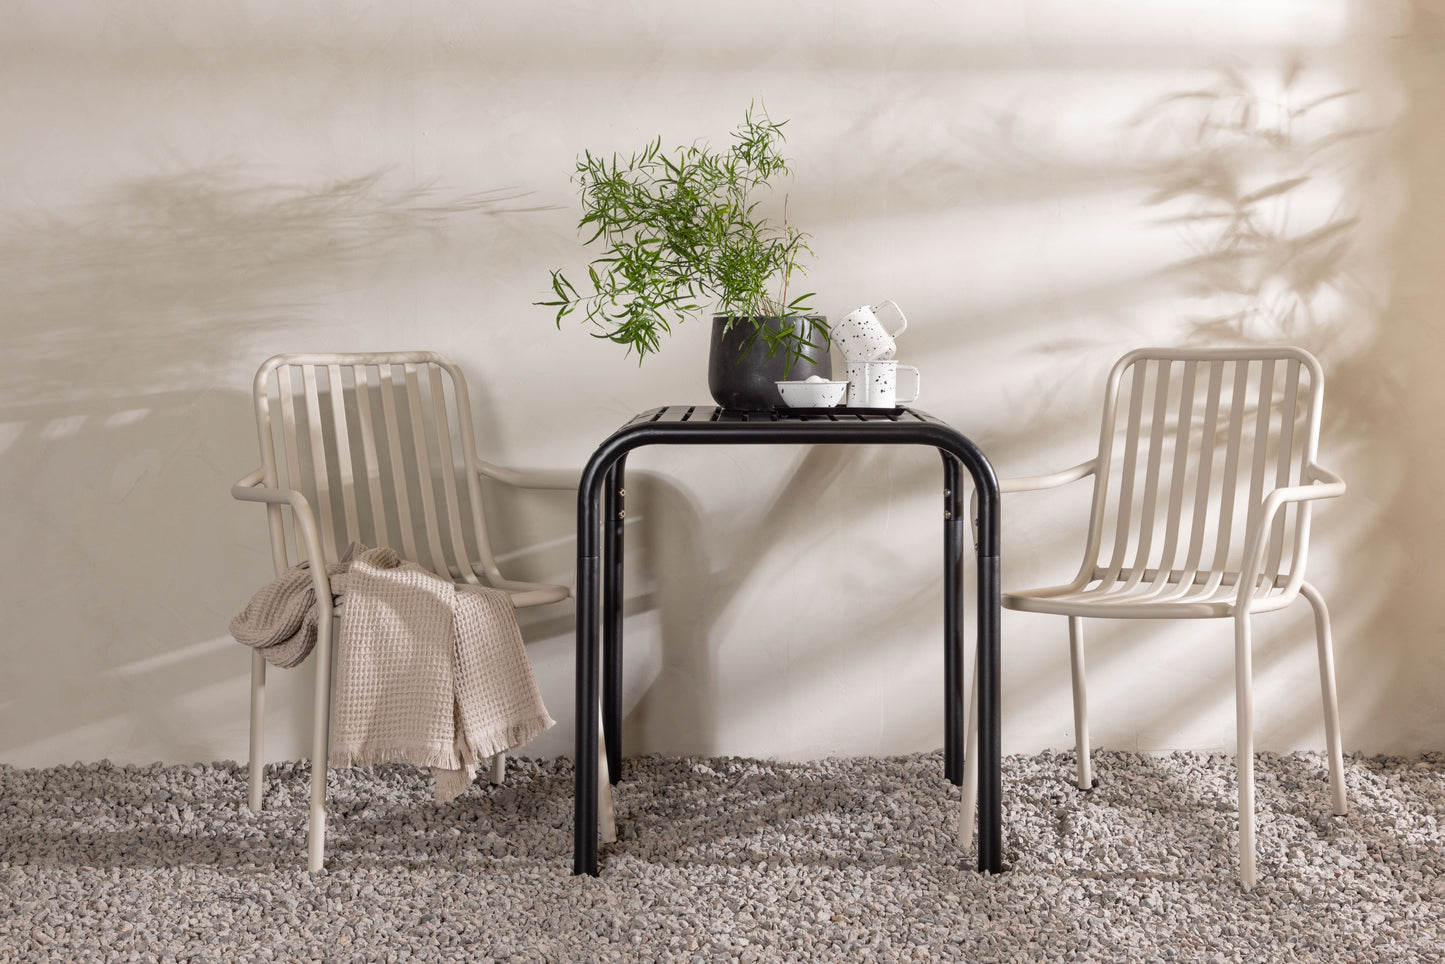 Borneo - Cafébord, Aluminium - Sort / Kvadrat 70*70* + Pekig stol Aluminium - Beige